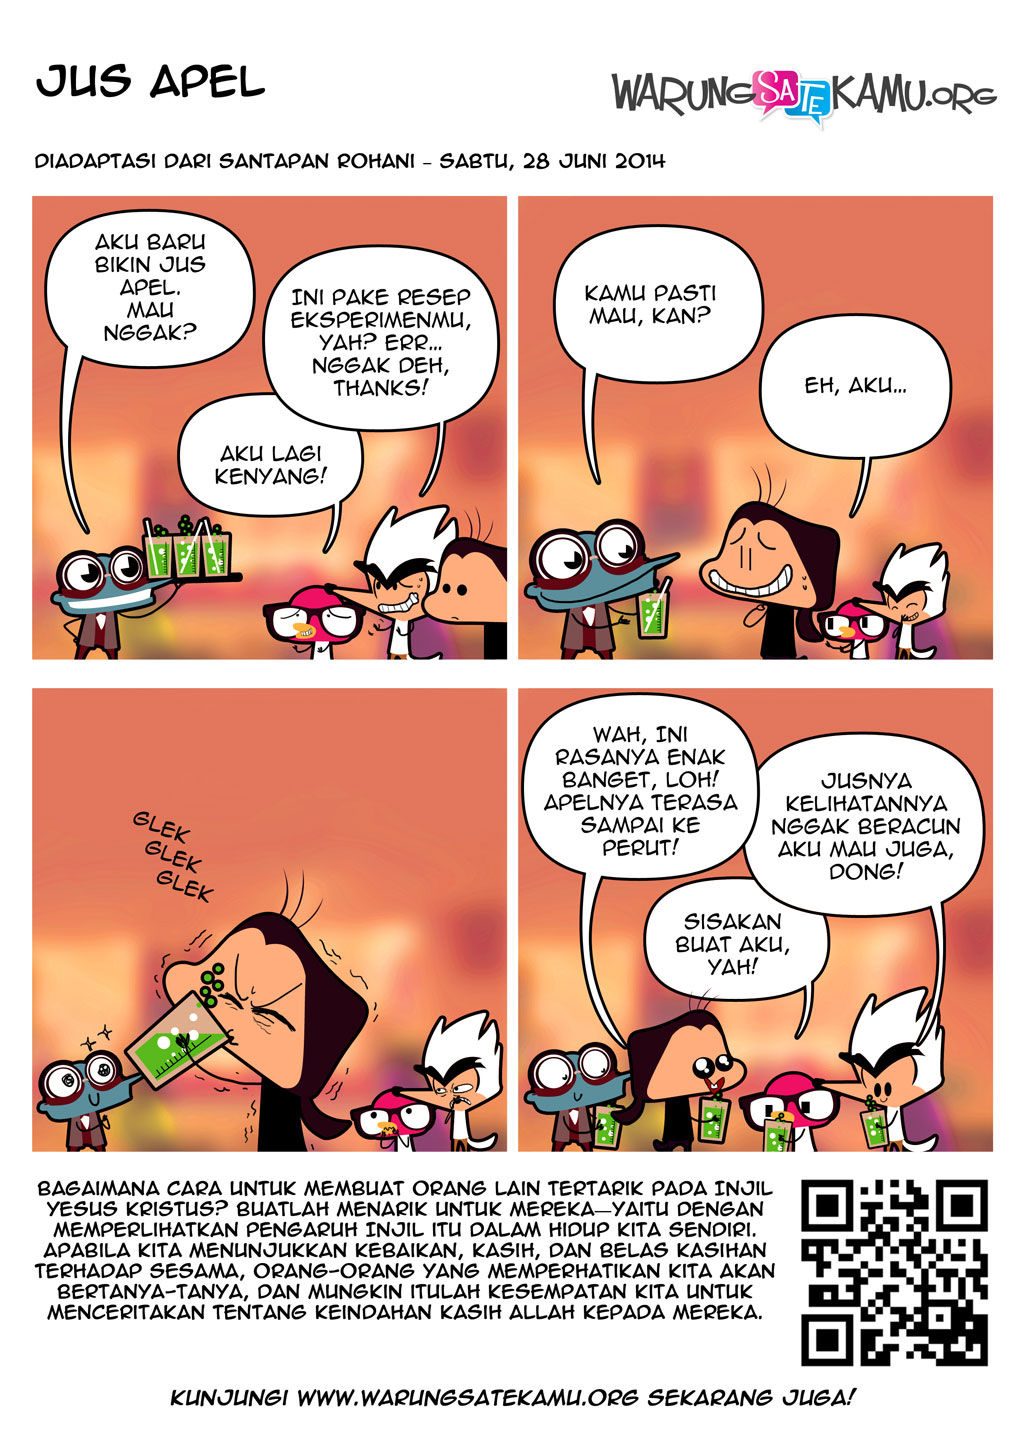 Komik-Strip-WarungSateKamu-20140628-Jus-Apel